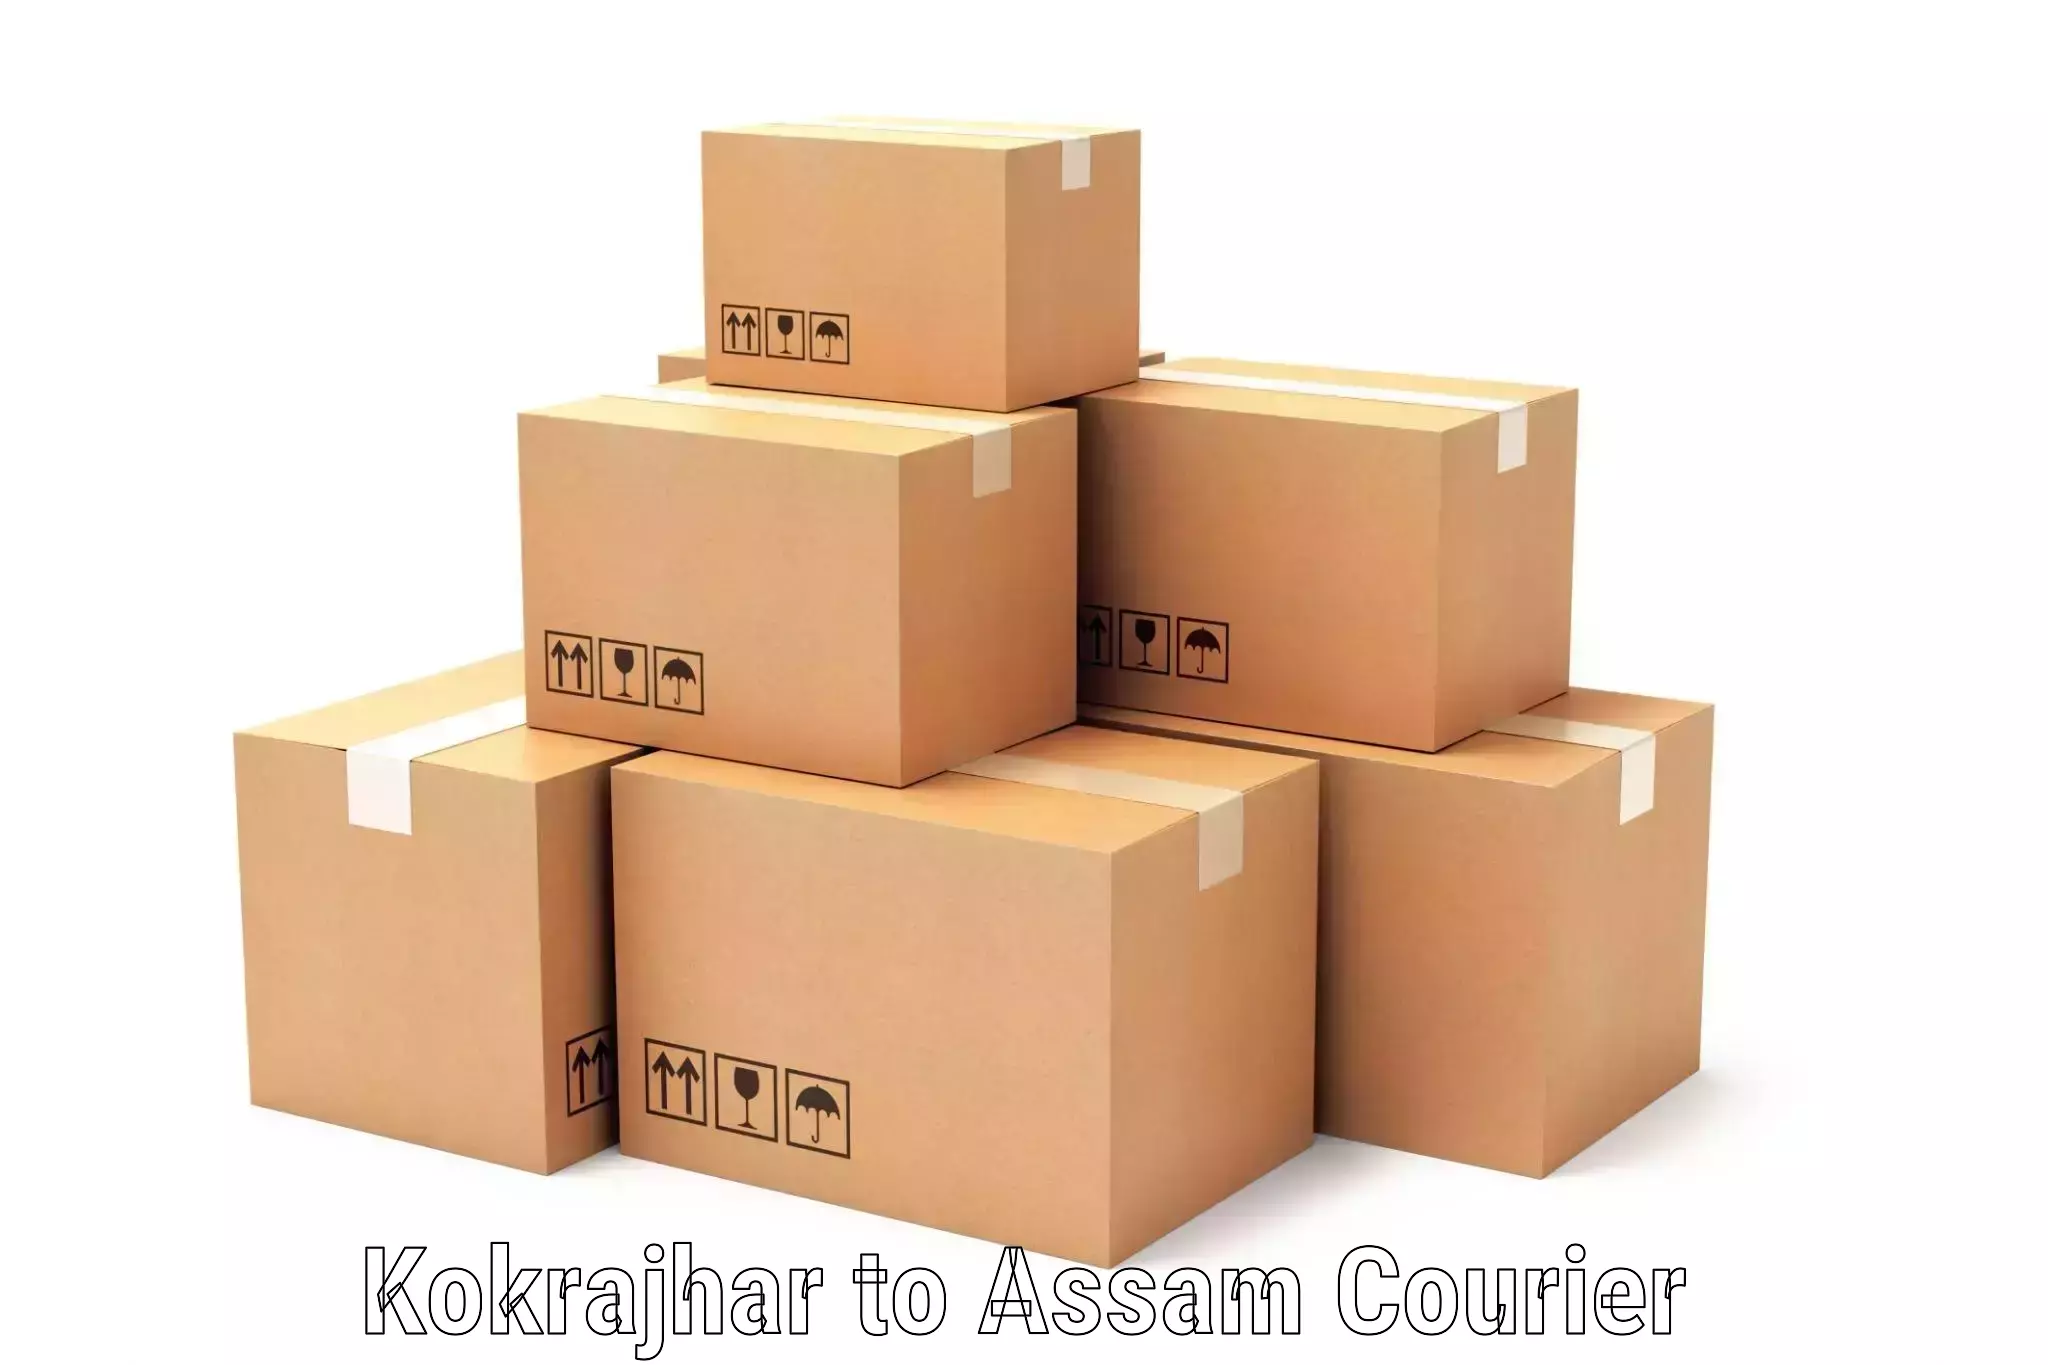 Cost-effective courier options Kokrajhar to Sivasagar